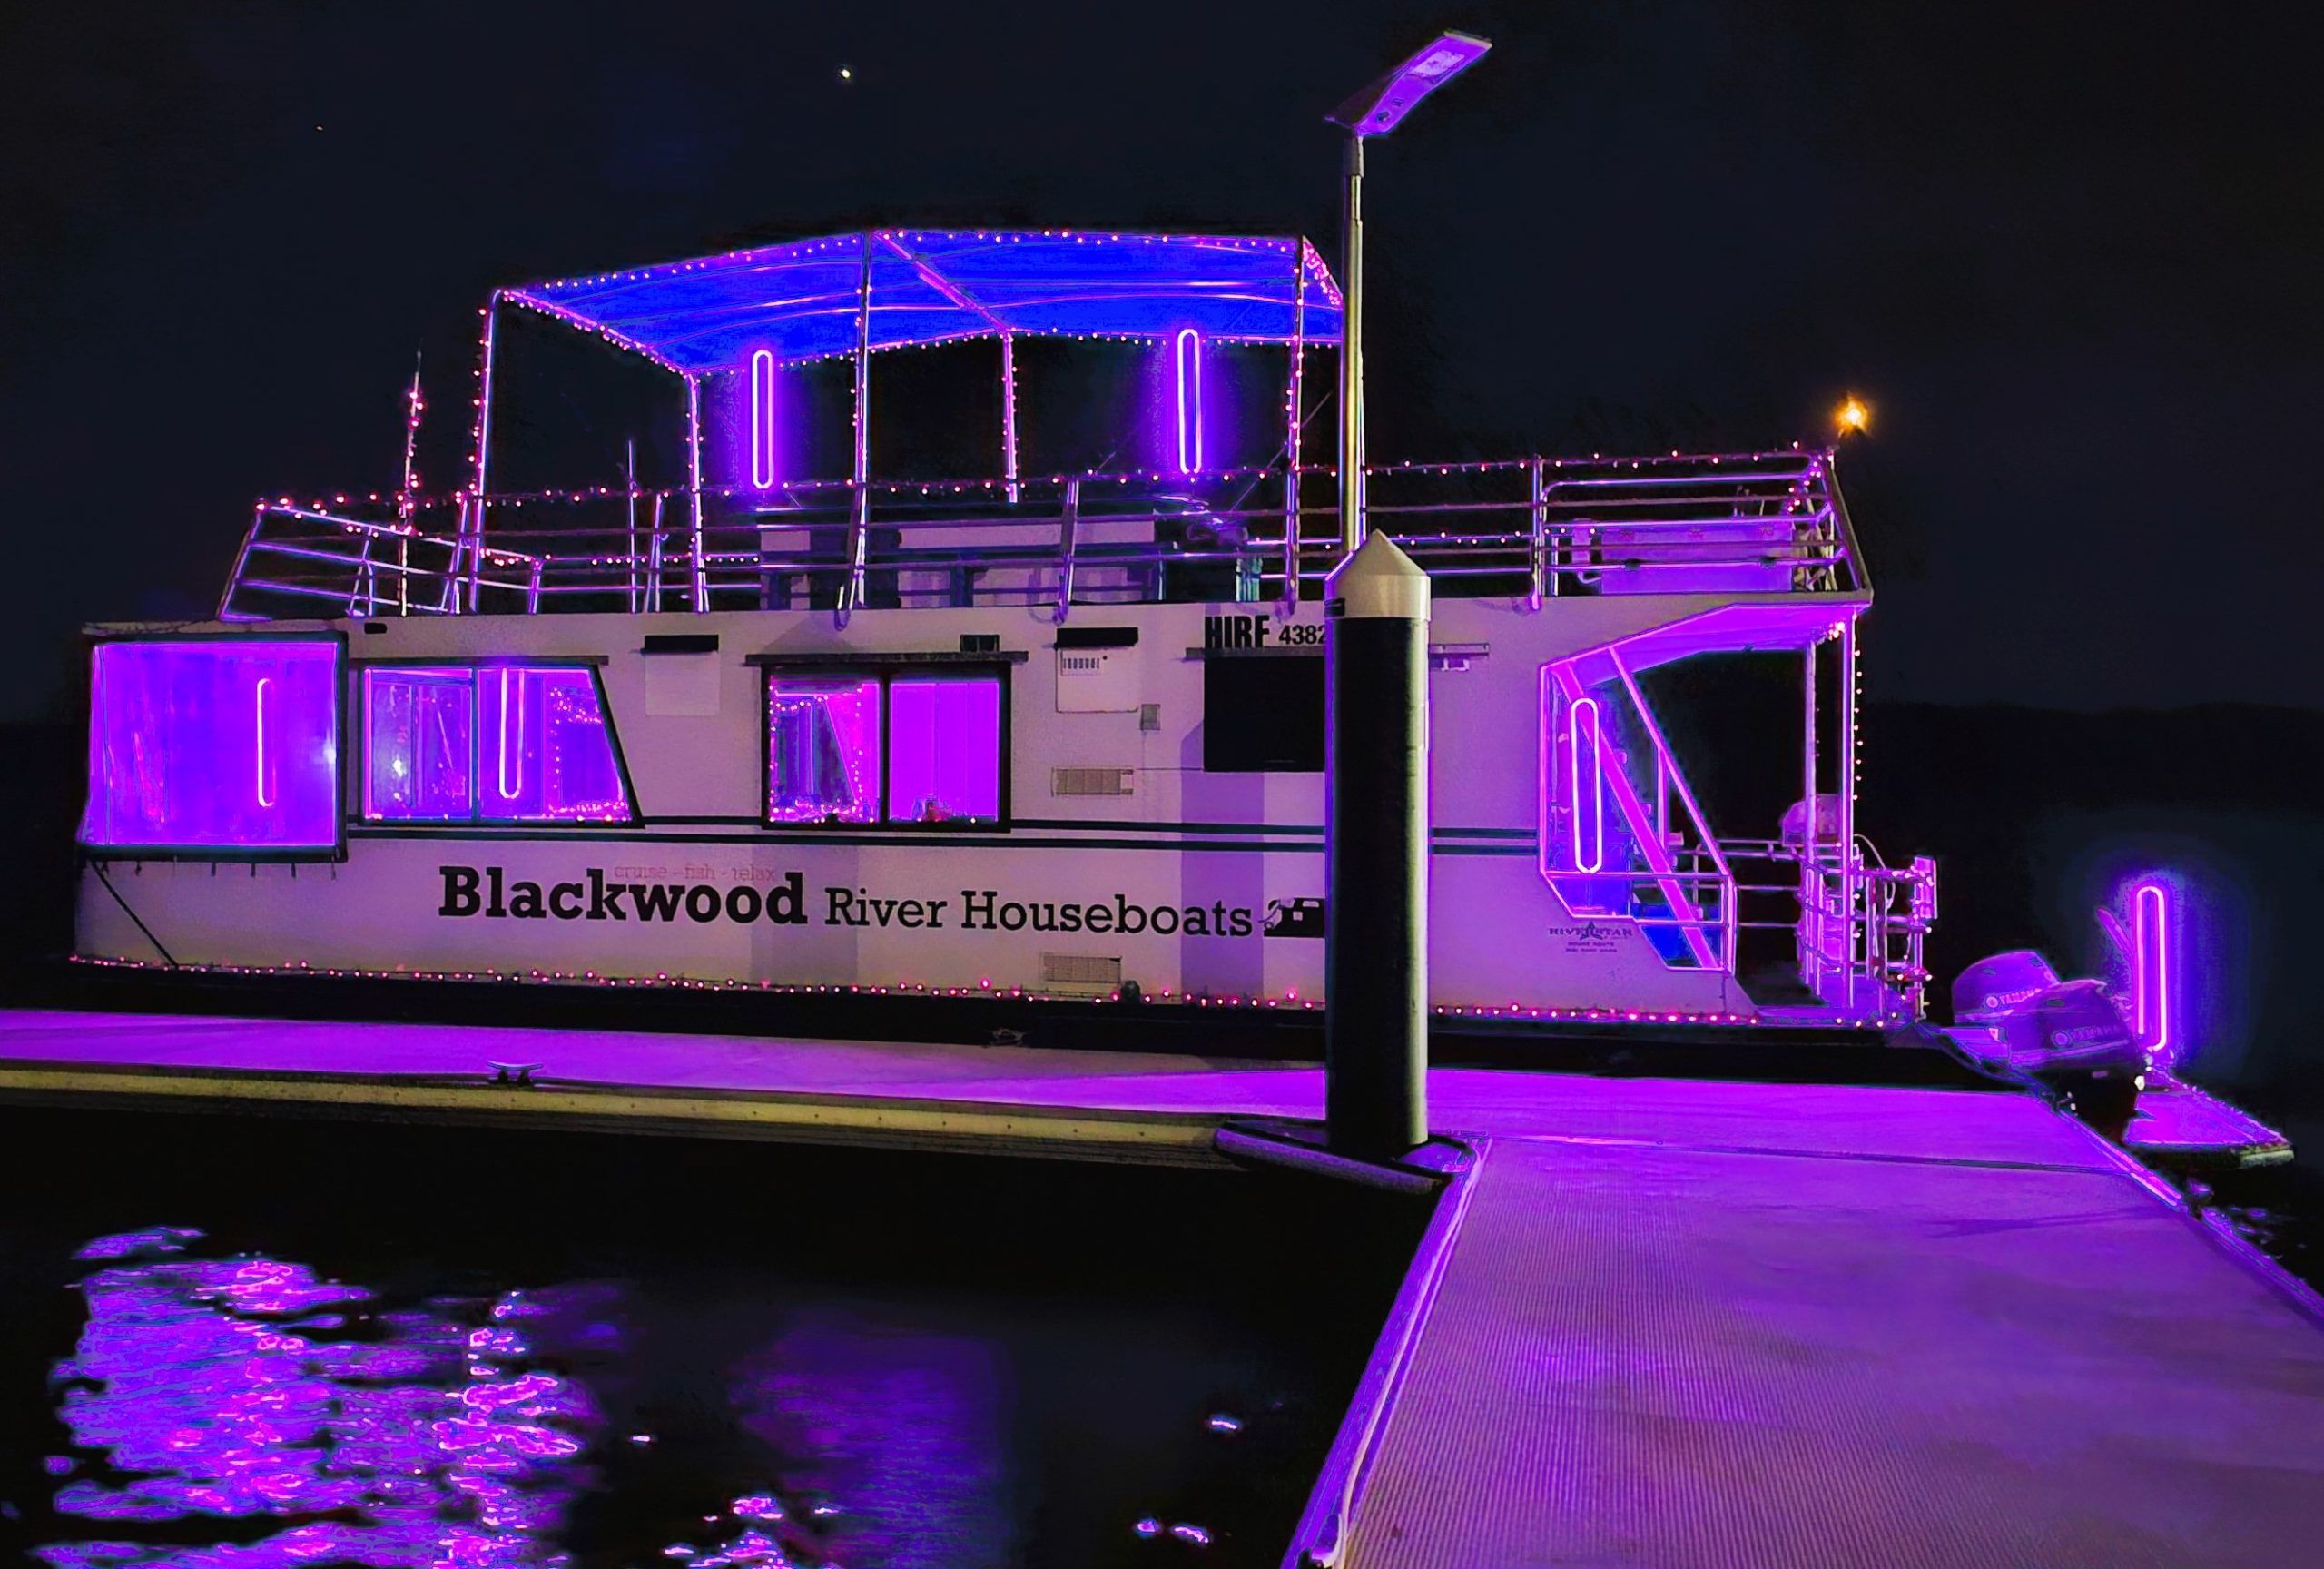 Blackwood Houseboats at night